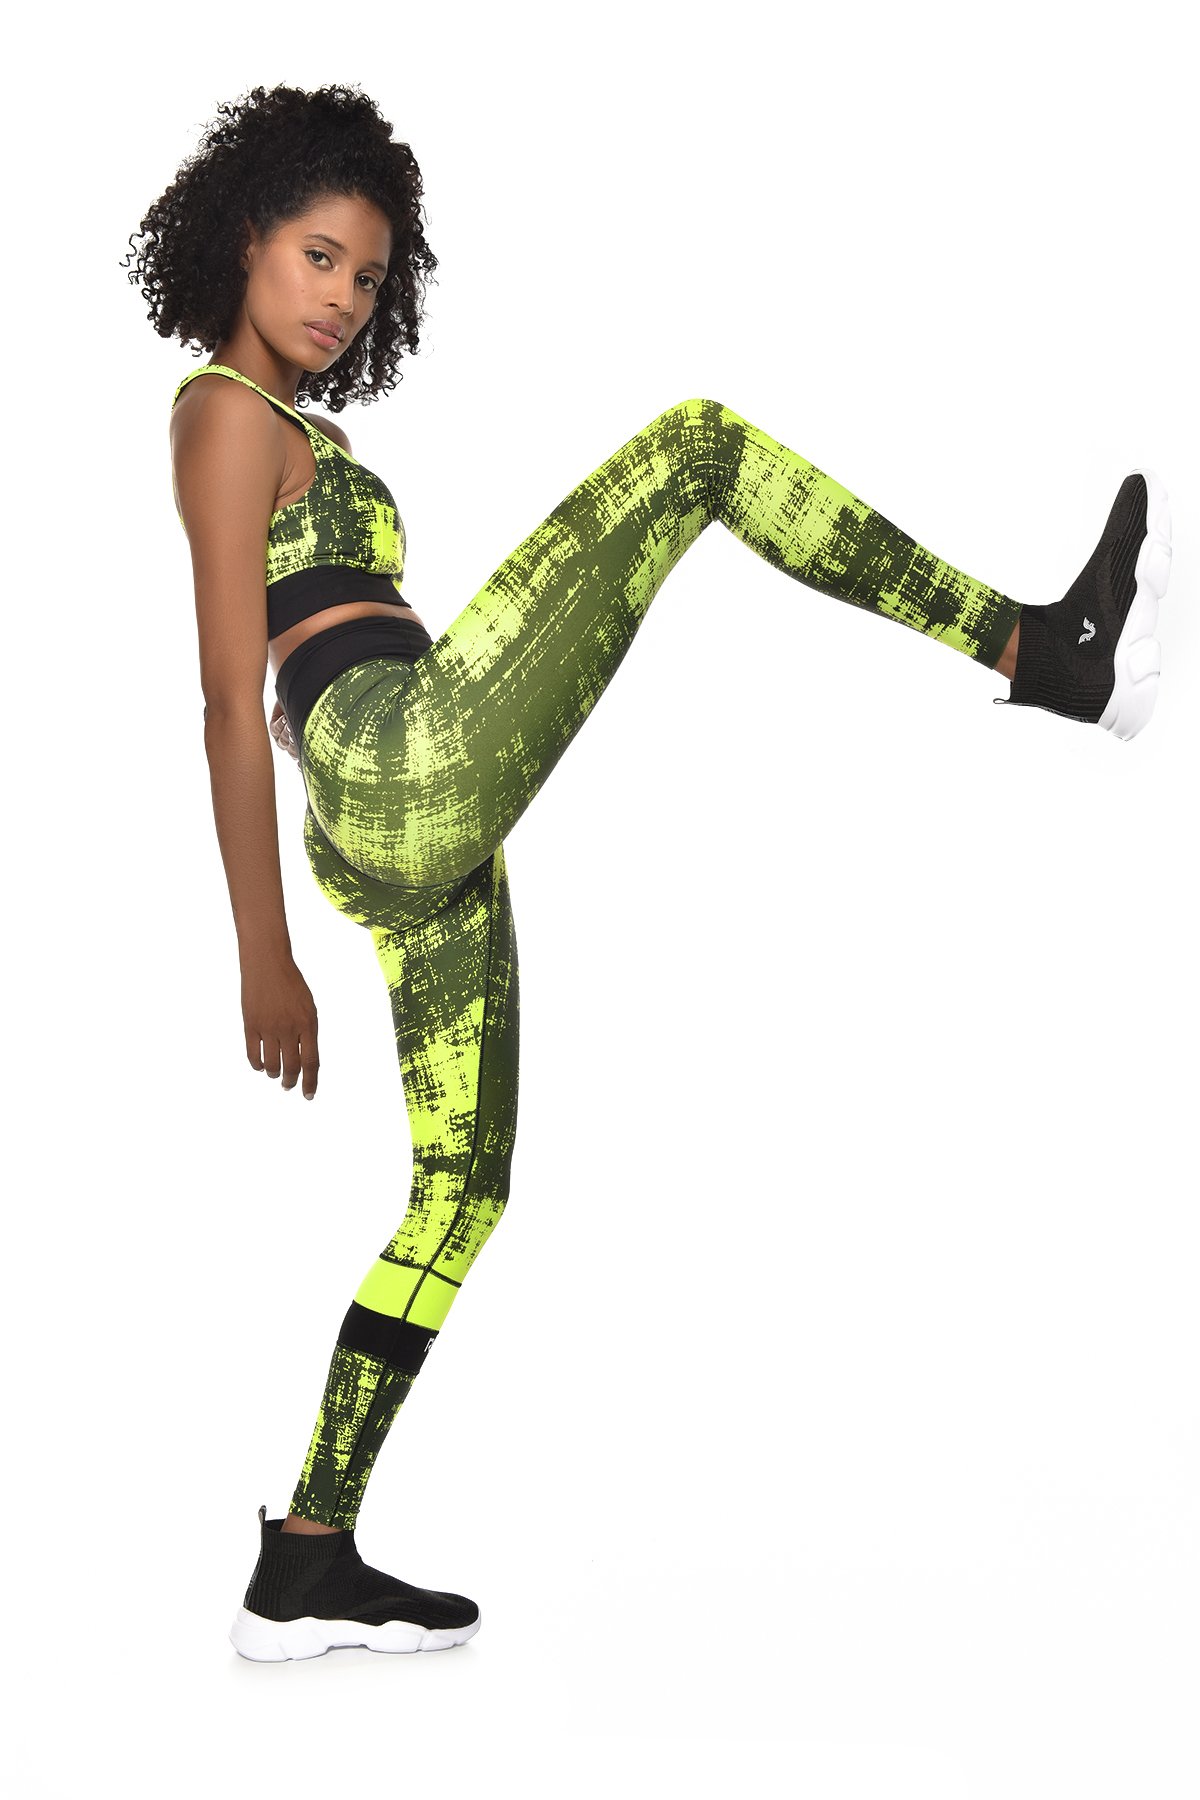 Kadın Neon Yeşil Yüksek Bel Spor Esnek ve Toparlayıcı Spor Tayt GW-9228